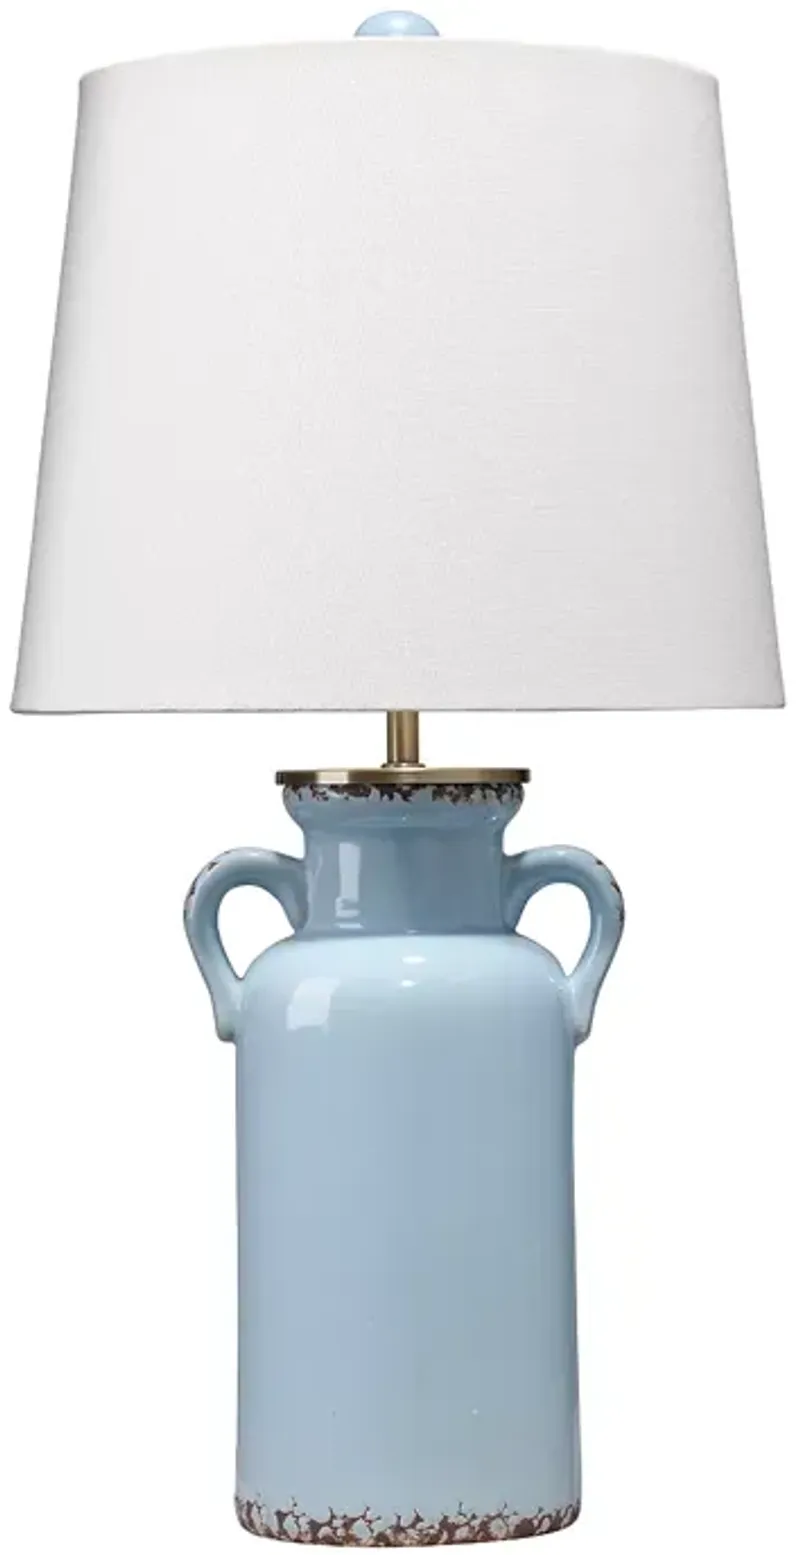 Bloomingdale's Piper Table Lamp